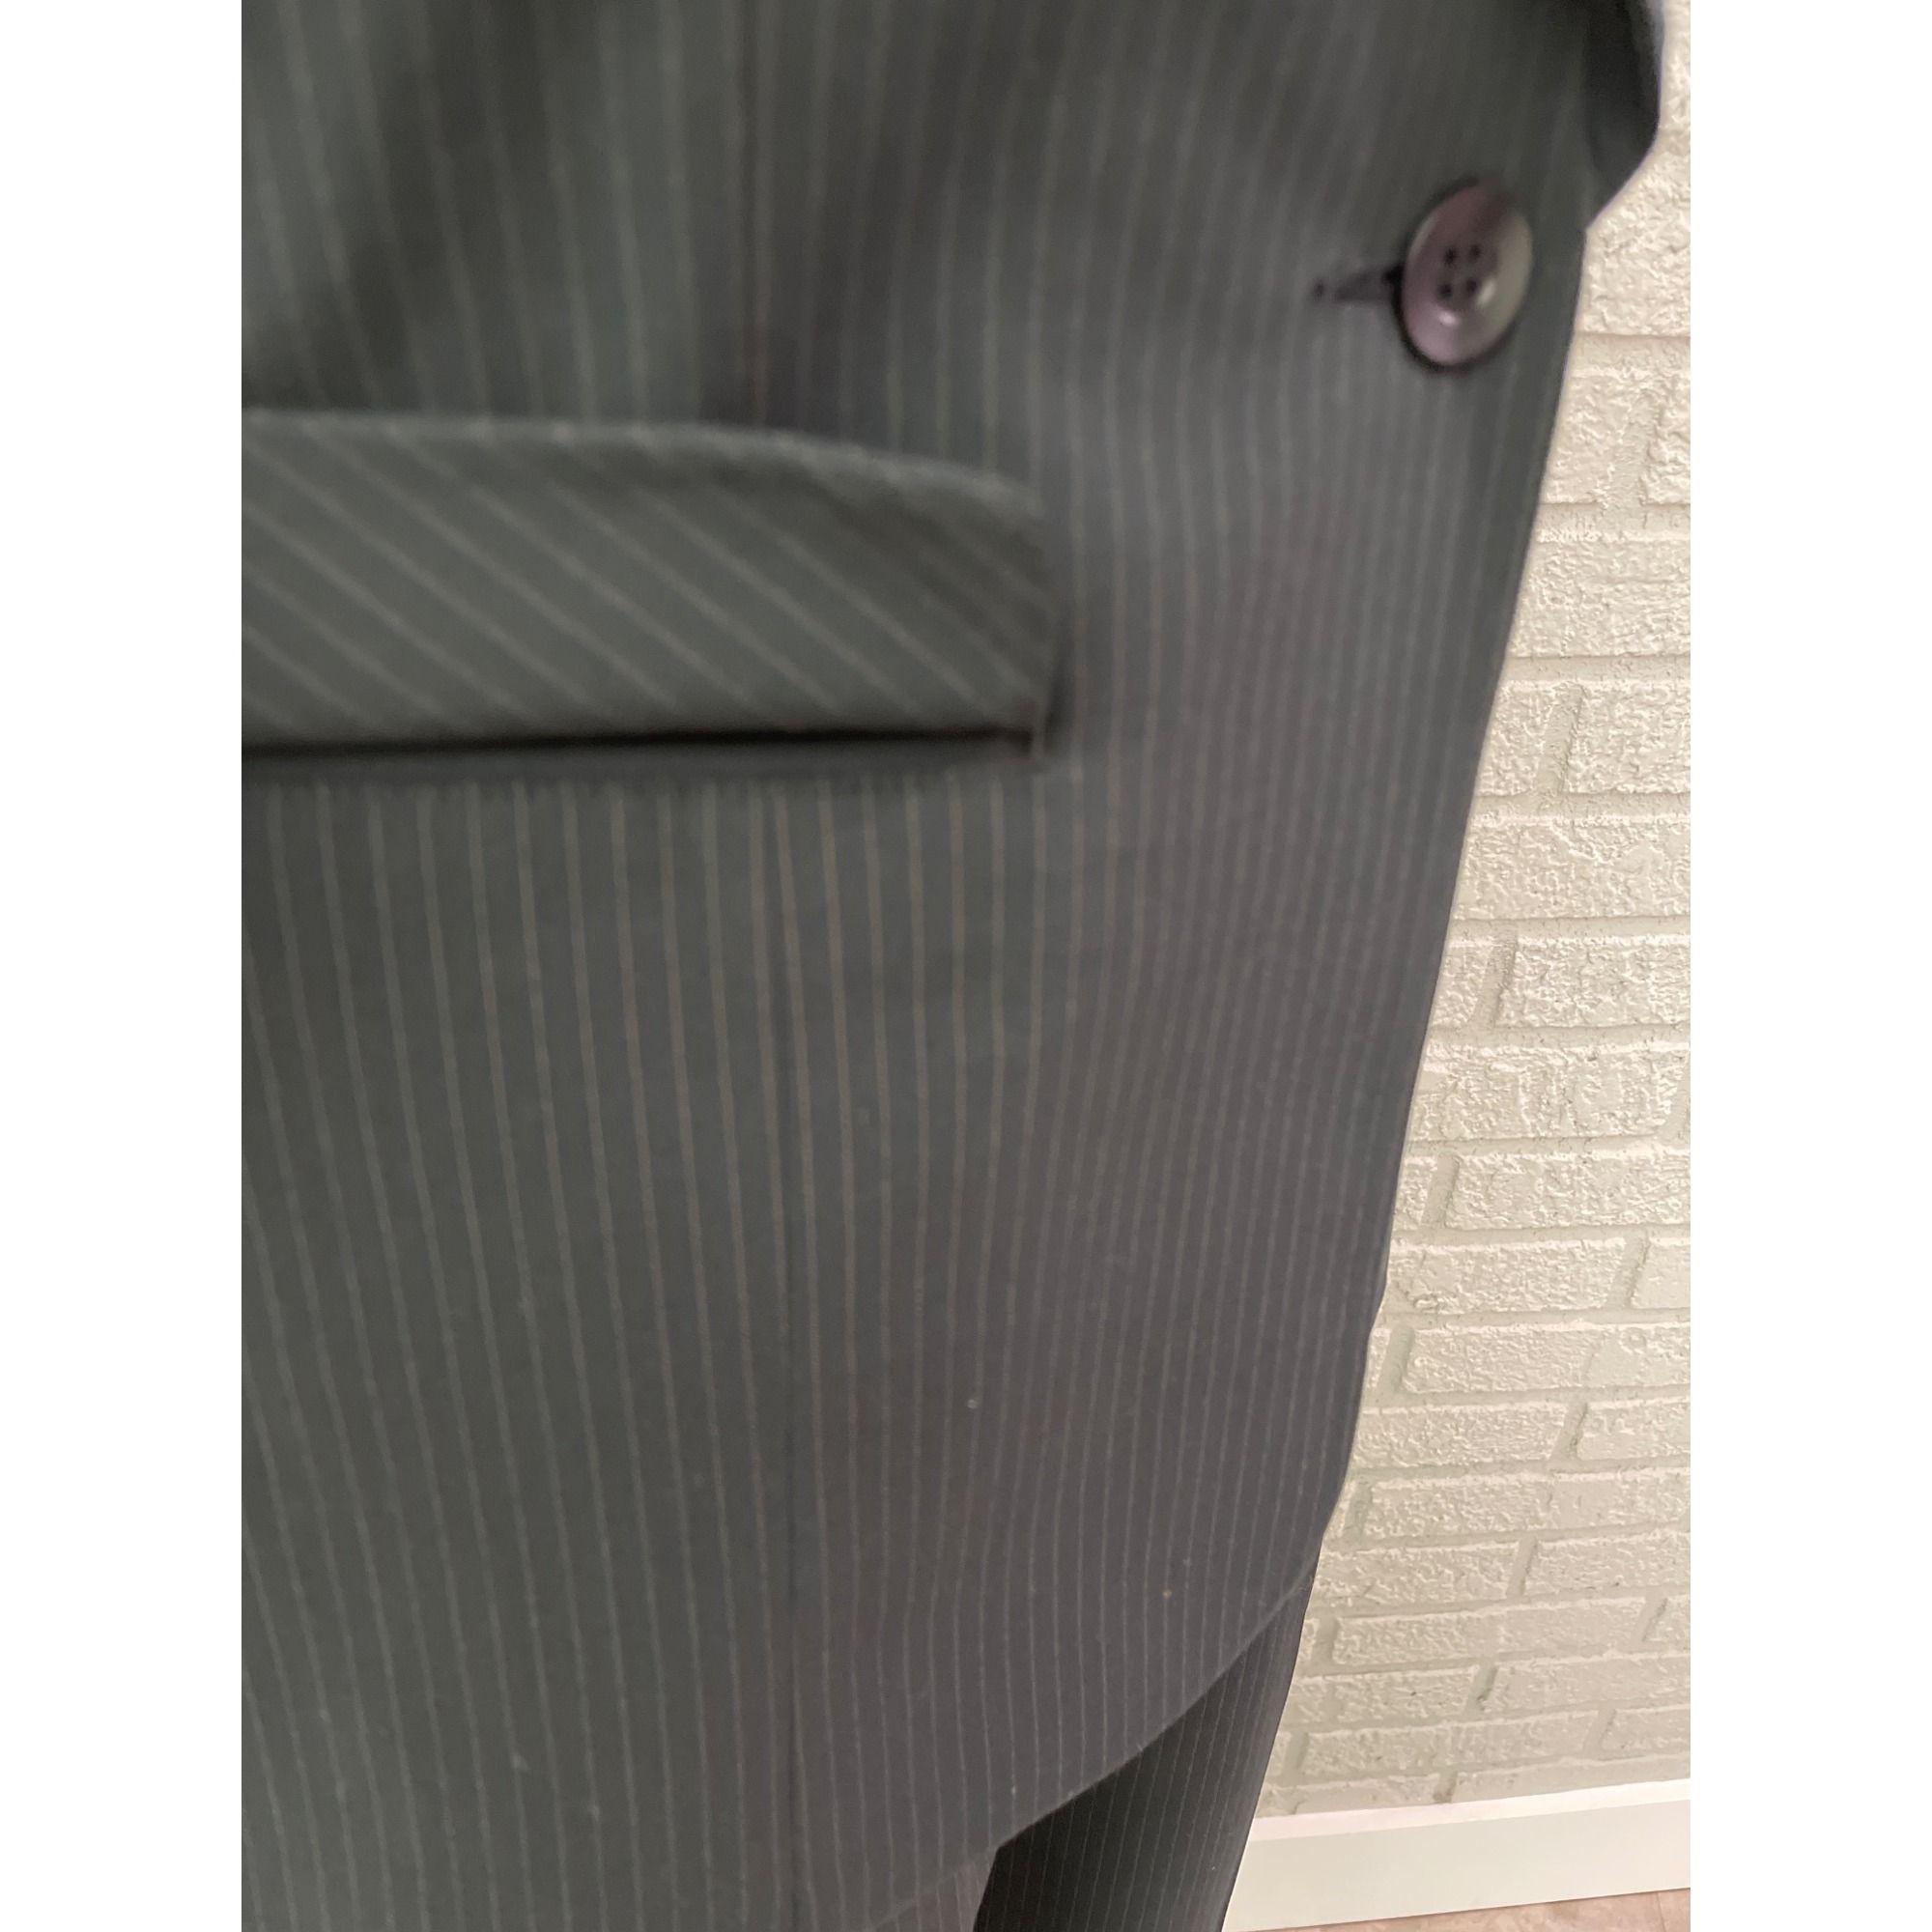 Other Cabi Black Pin Striped Pant 2 Pcs Suit Set Jacket 4 Pant 6 Size S / US 4 / IT 40 - 10 Thumbnail